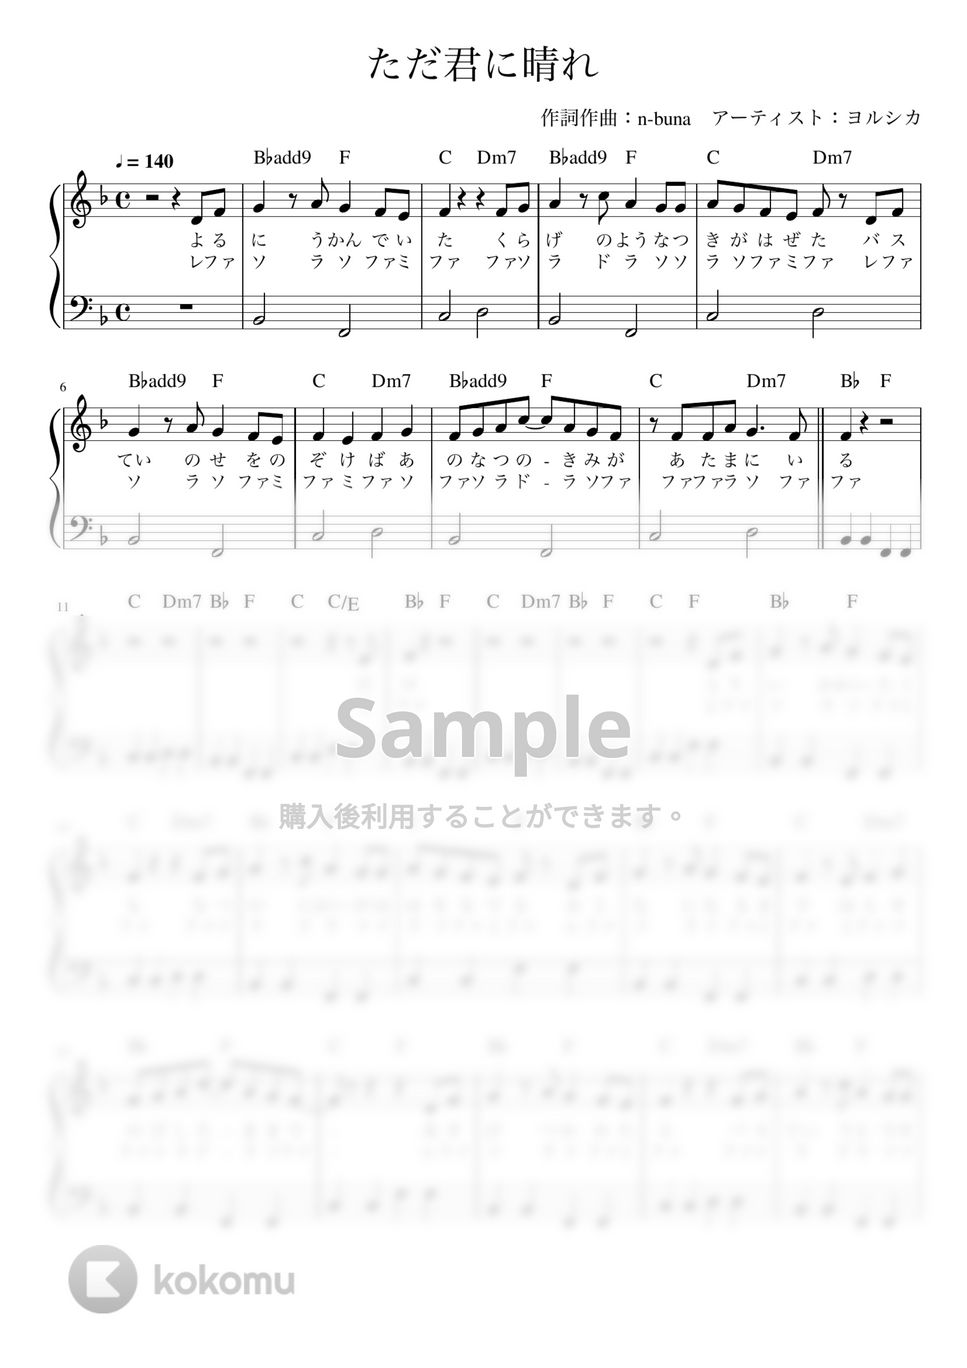 ヨルシカ - ただ君に晴れ (かんたん 歌詞付き ドレミ付き 初心者) by piano.tokyo